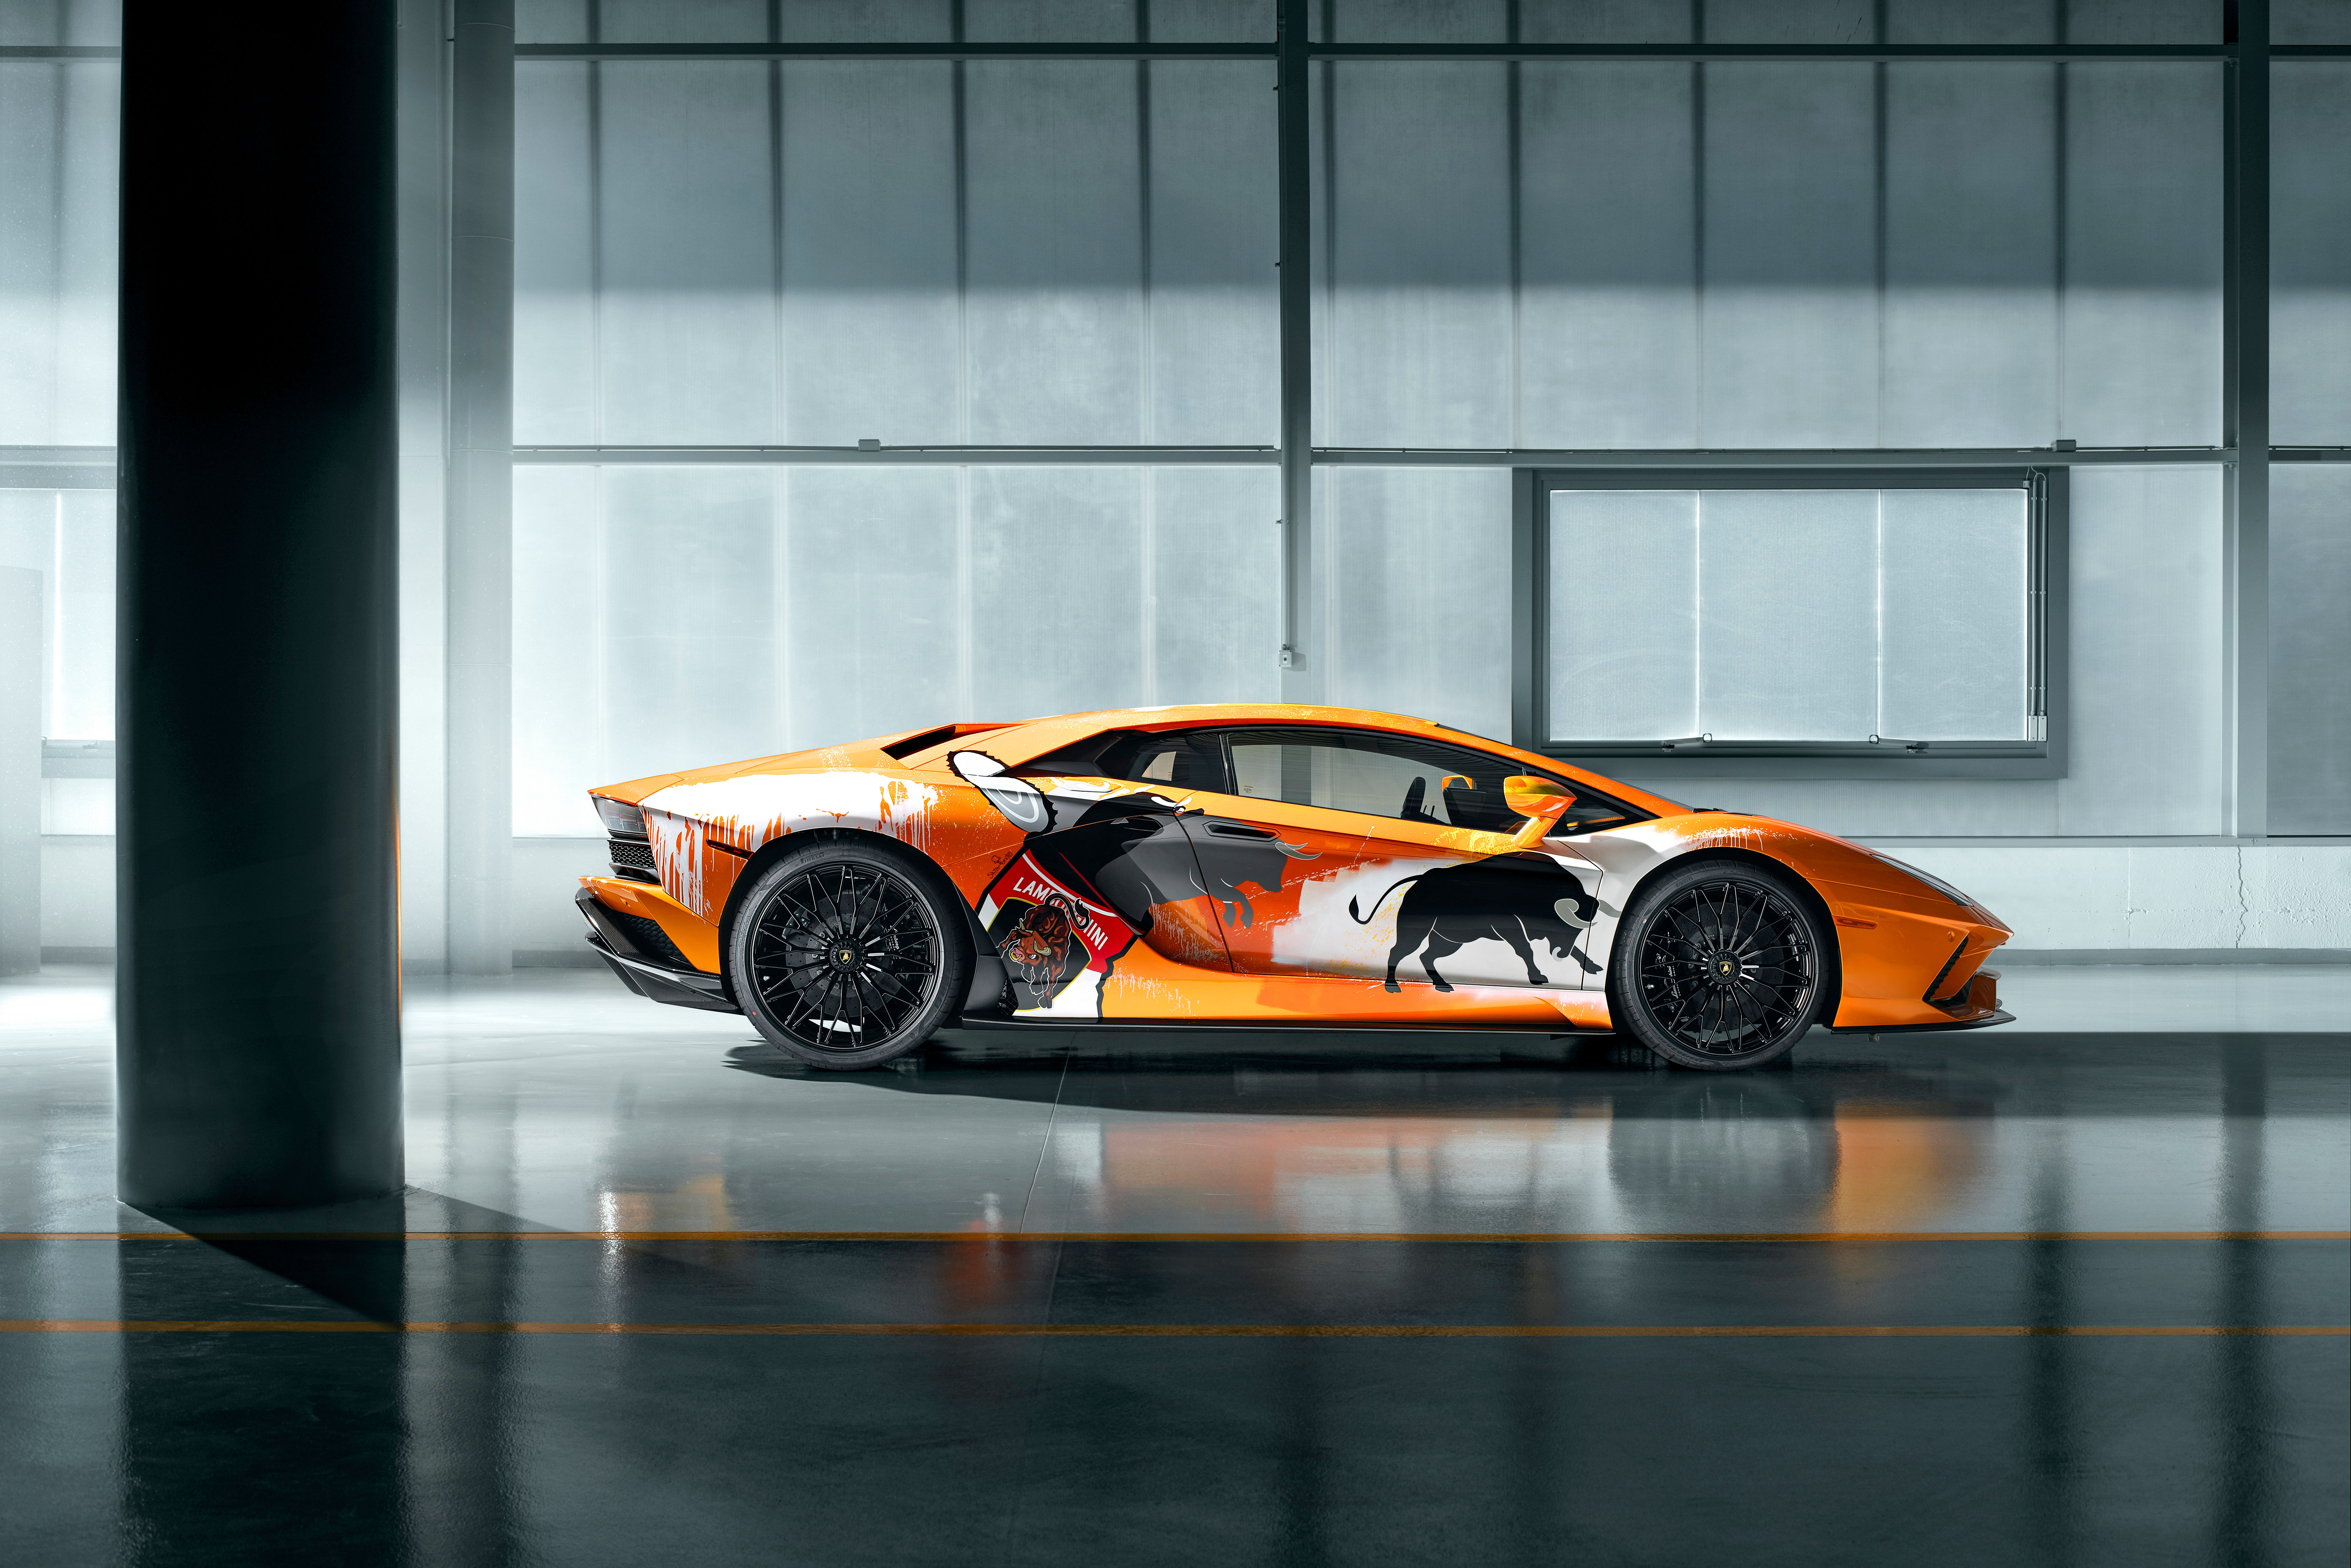 Lamborghini Aventador đã đi vào lịch sử là một trong những siêu xe tốc độ và đẳng cấp nhất thế giới. Tìm hiểu về quá trình thiết kế và phát triển của chiếc xe này, cùng những tài năng và kỹ thuật của những chuyên gia trong ngành công nghiệp ô tô. Xem hình ảnh liên quan để trải nghiệm một chuyến phiêu lưu đầy cảm xúc!